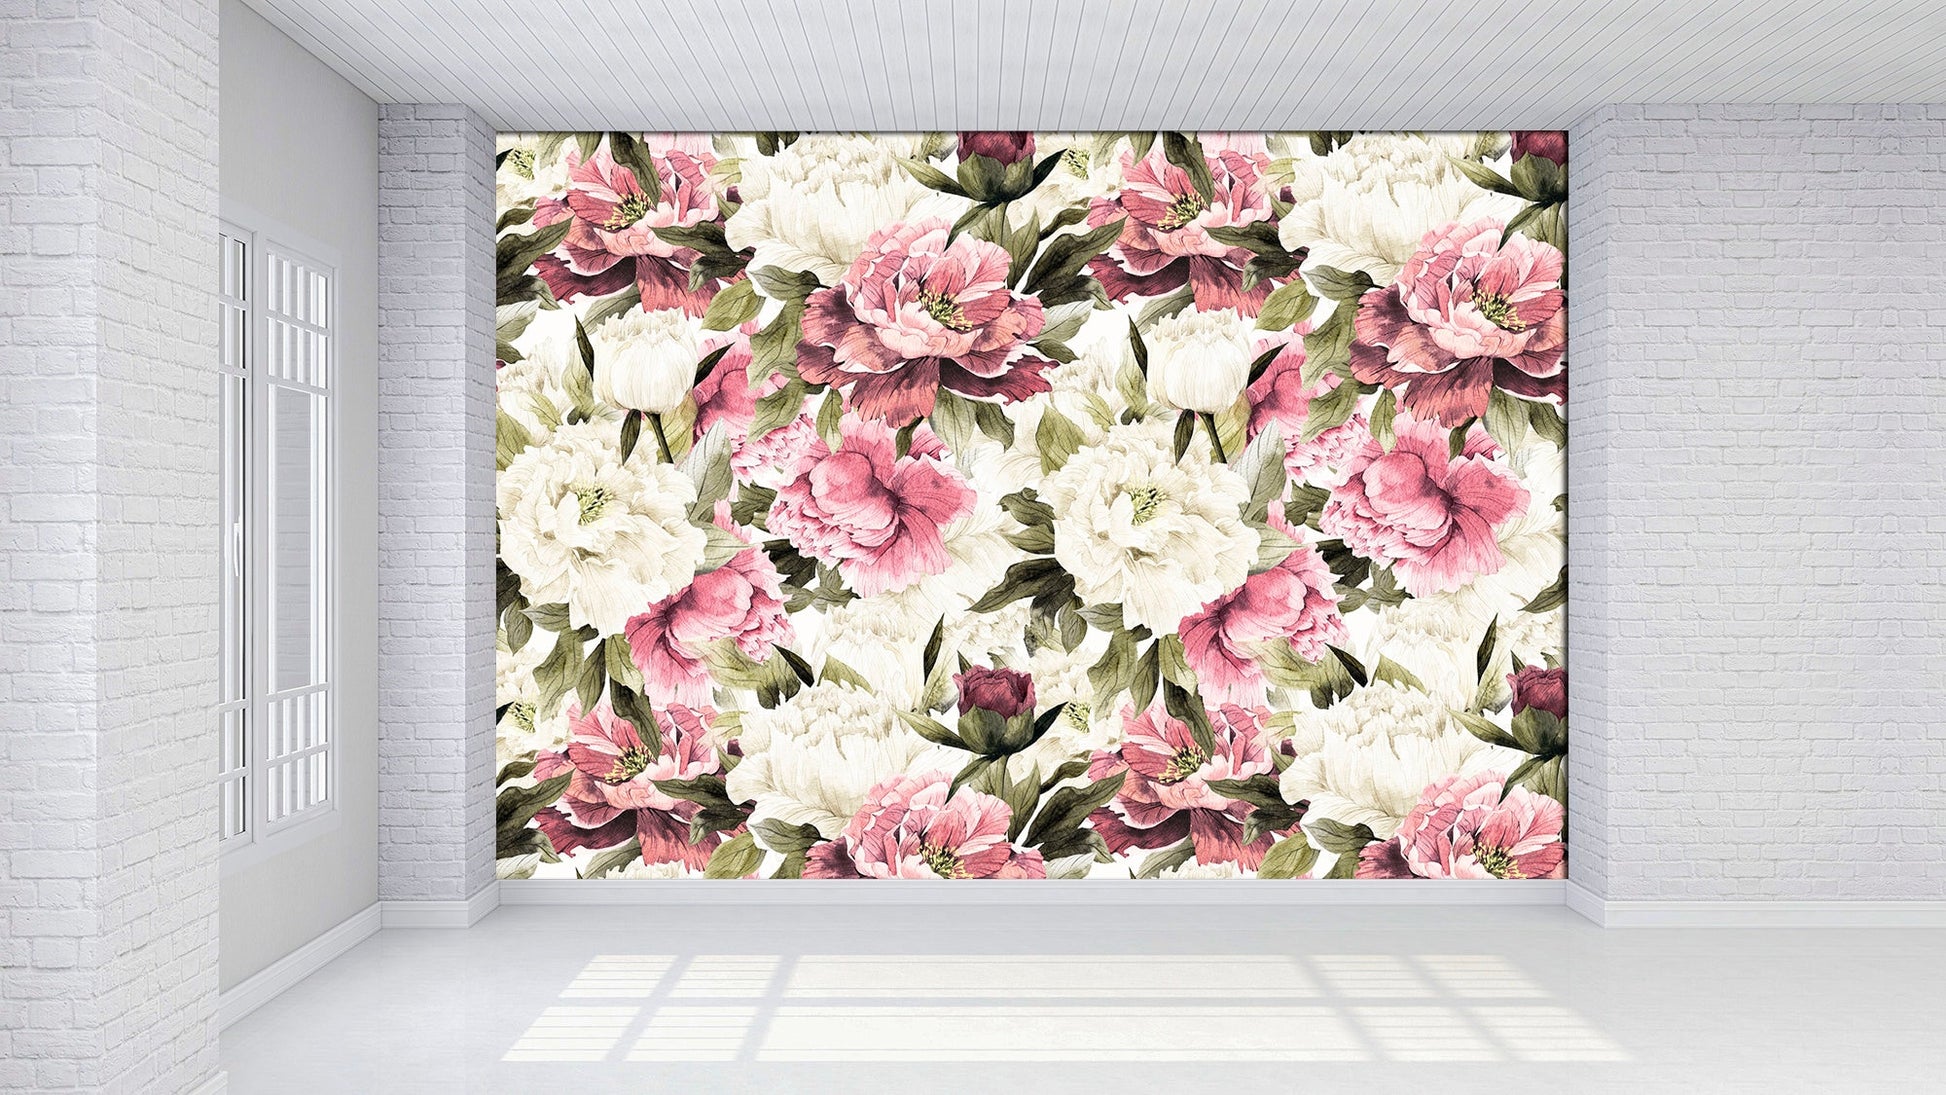 Floral wallpaper Bedroom wall decor Scandinavian wallpaper, Peony wall art Temporary wallpaper Nursery wallpaper